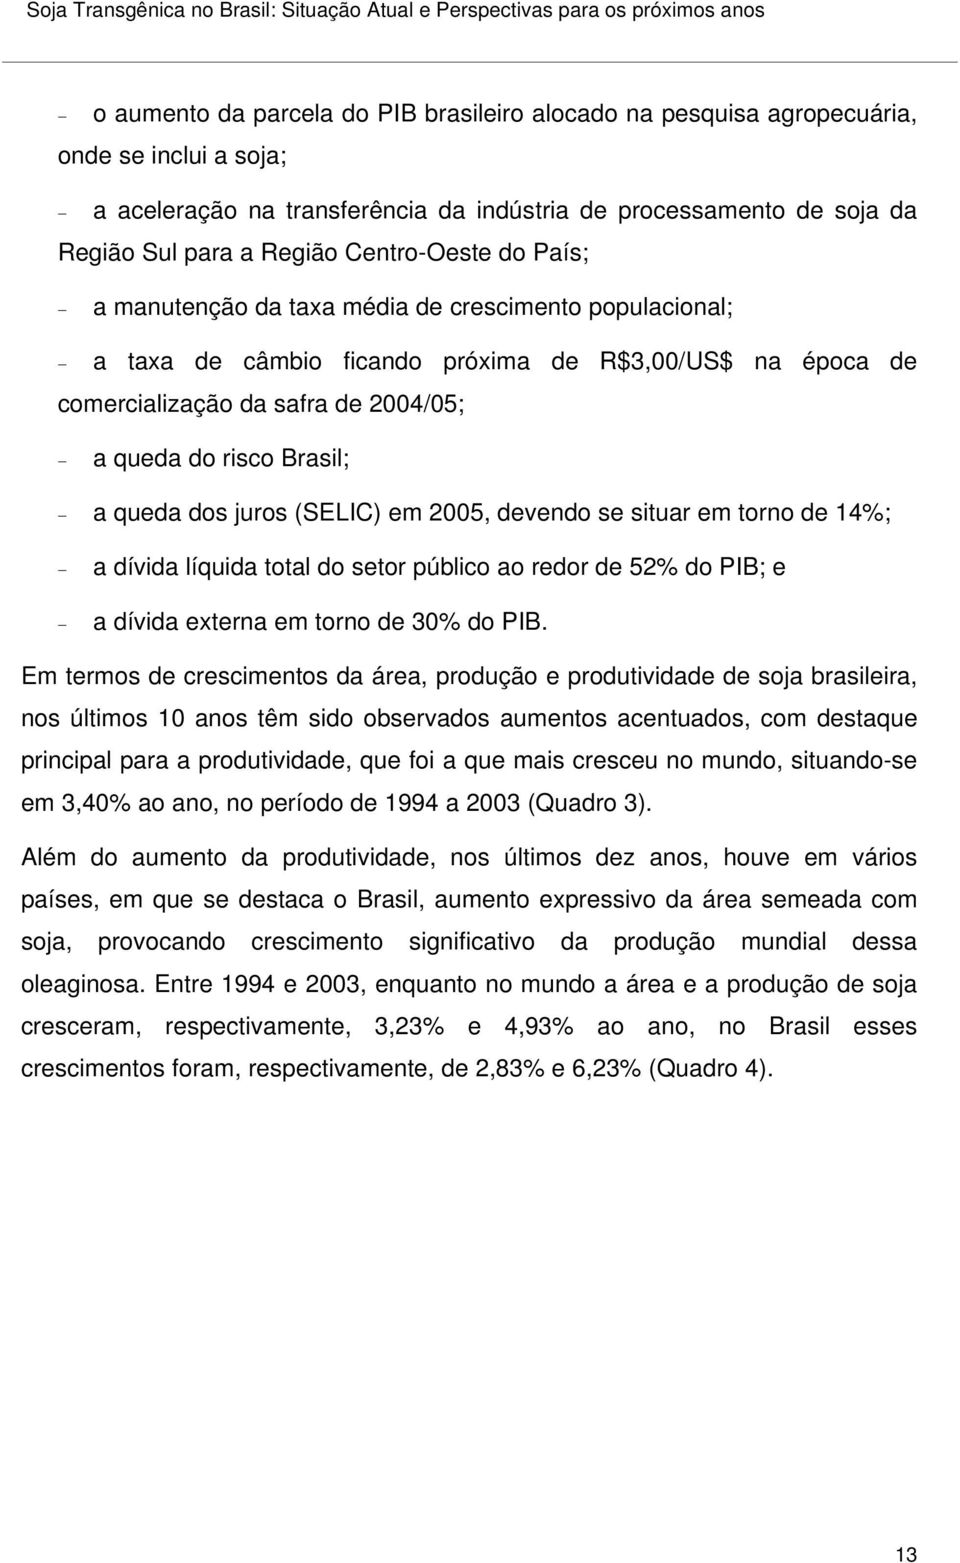 R$3,00/US$ na época de comercialização da safra de 2004/05; a queda do risco Brasil; a queda dos juros (SELIC) em 2005, devendo se situar em torno de 14%; a dívida líquida total do setor público ao